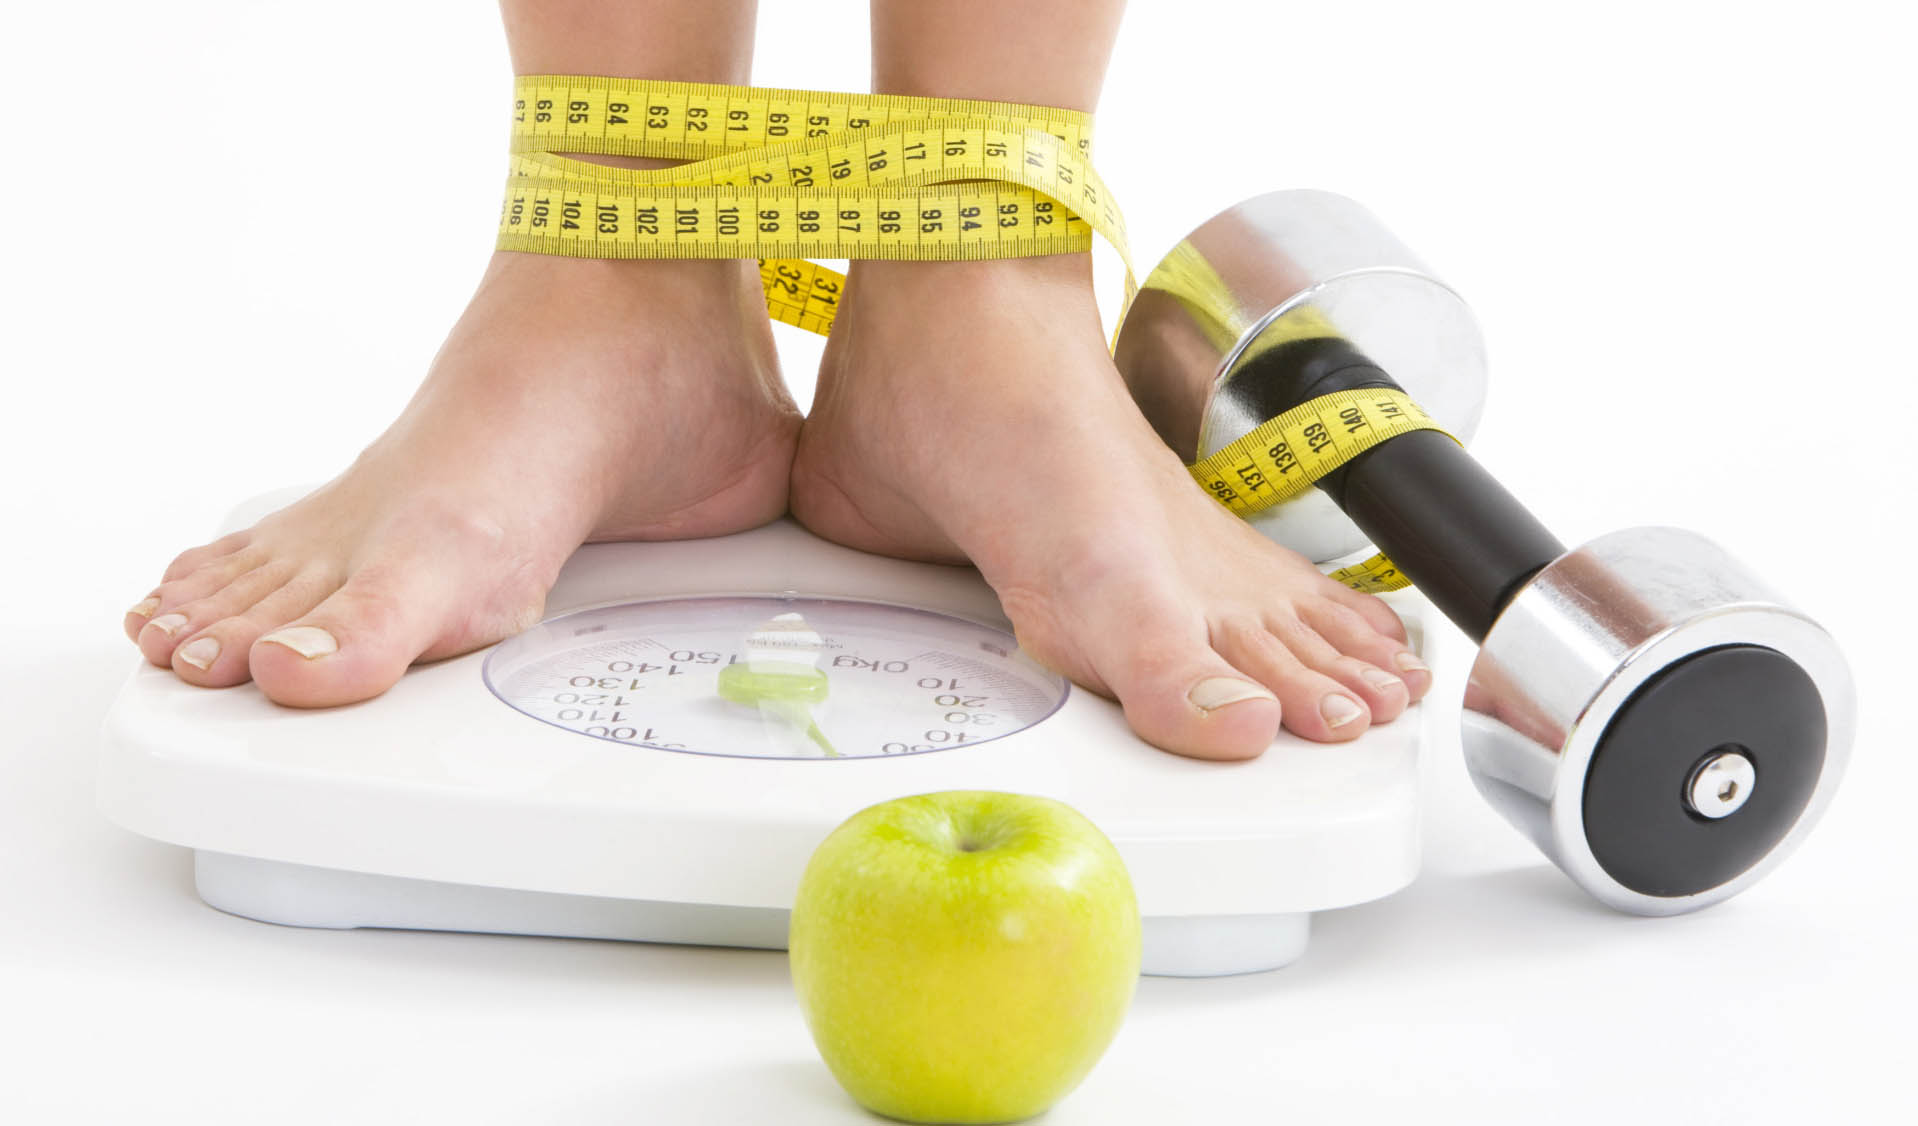 La Sociedad Alemana de Alimentación indicó que un elevado índice de personas entres los 18 y 65 años padecen obesidad